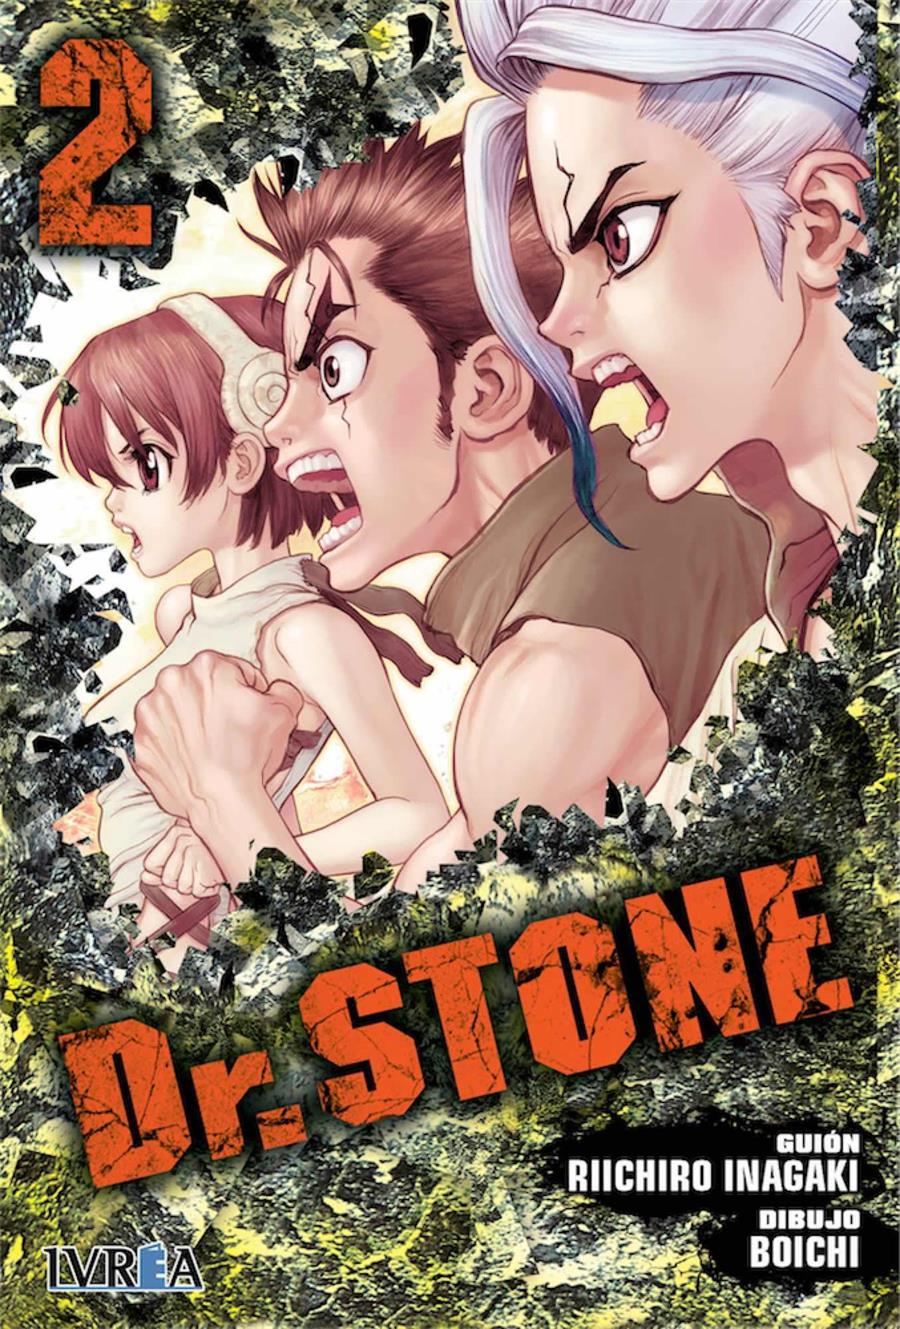 Dr. Stone 02 | N0718-IVR06 | Riichiro Inagaki, Boichi | Terra de Còmic - Tu tienda de cómics online especializada en cómics, manga y merchandising